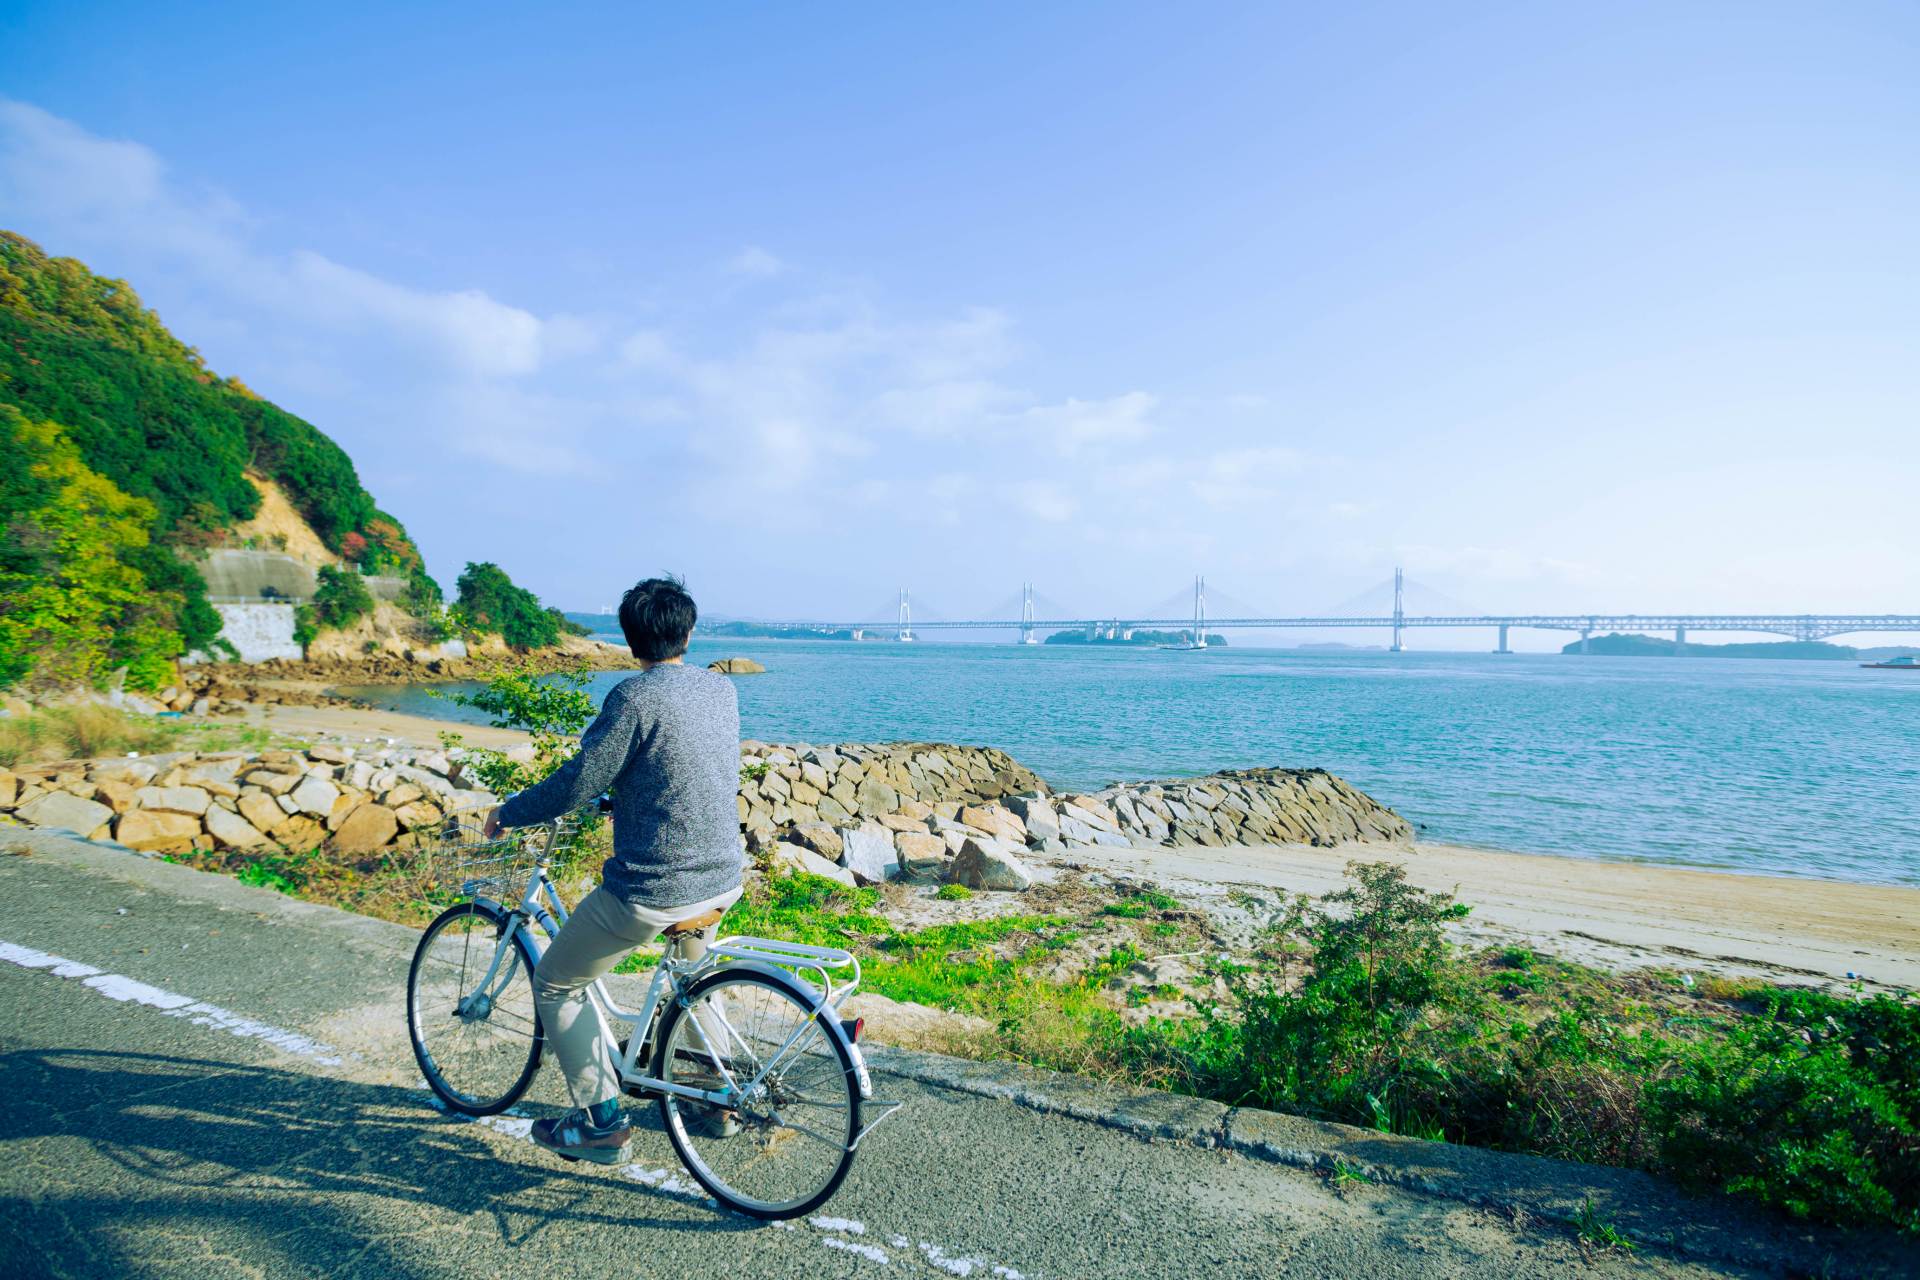 本島サイクリング 】歴史と自然が感じられる本島を自転車で一周 | GOOD LUCK TRIP